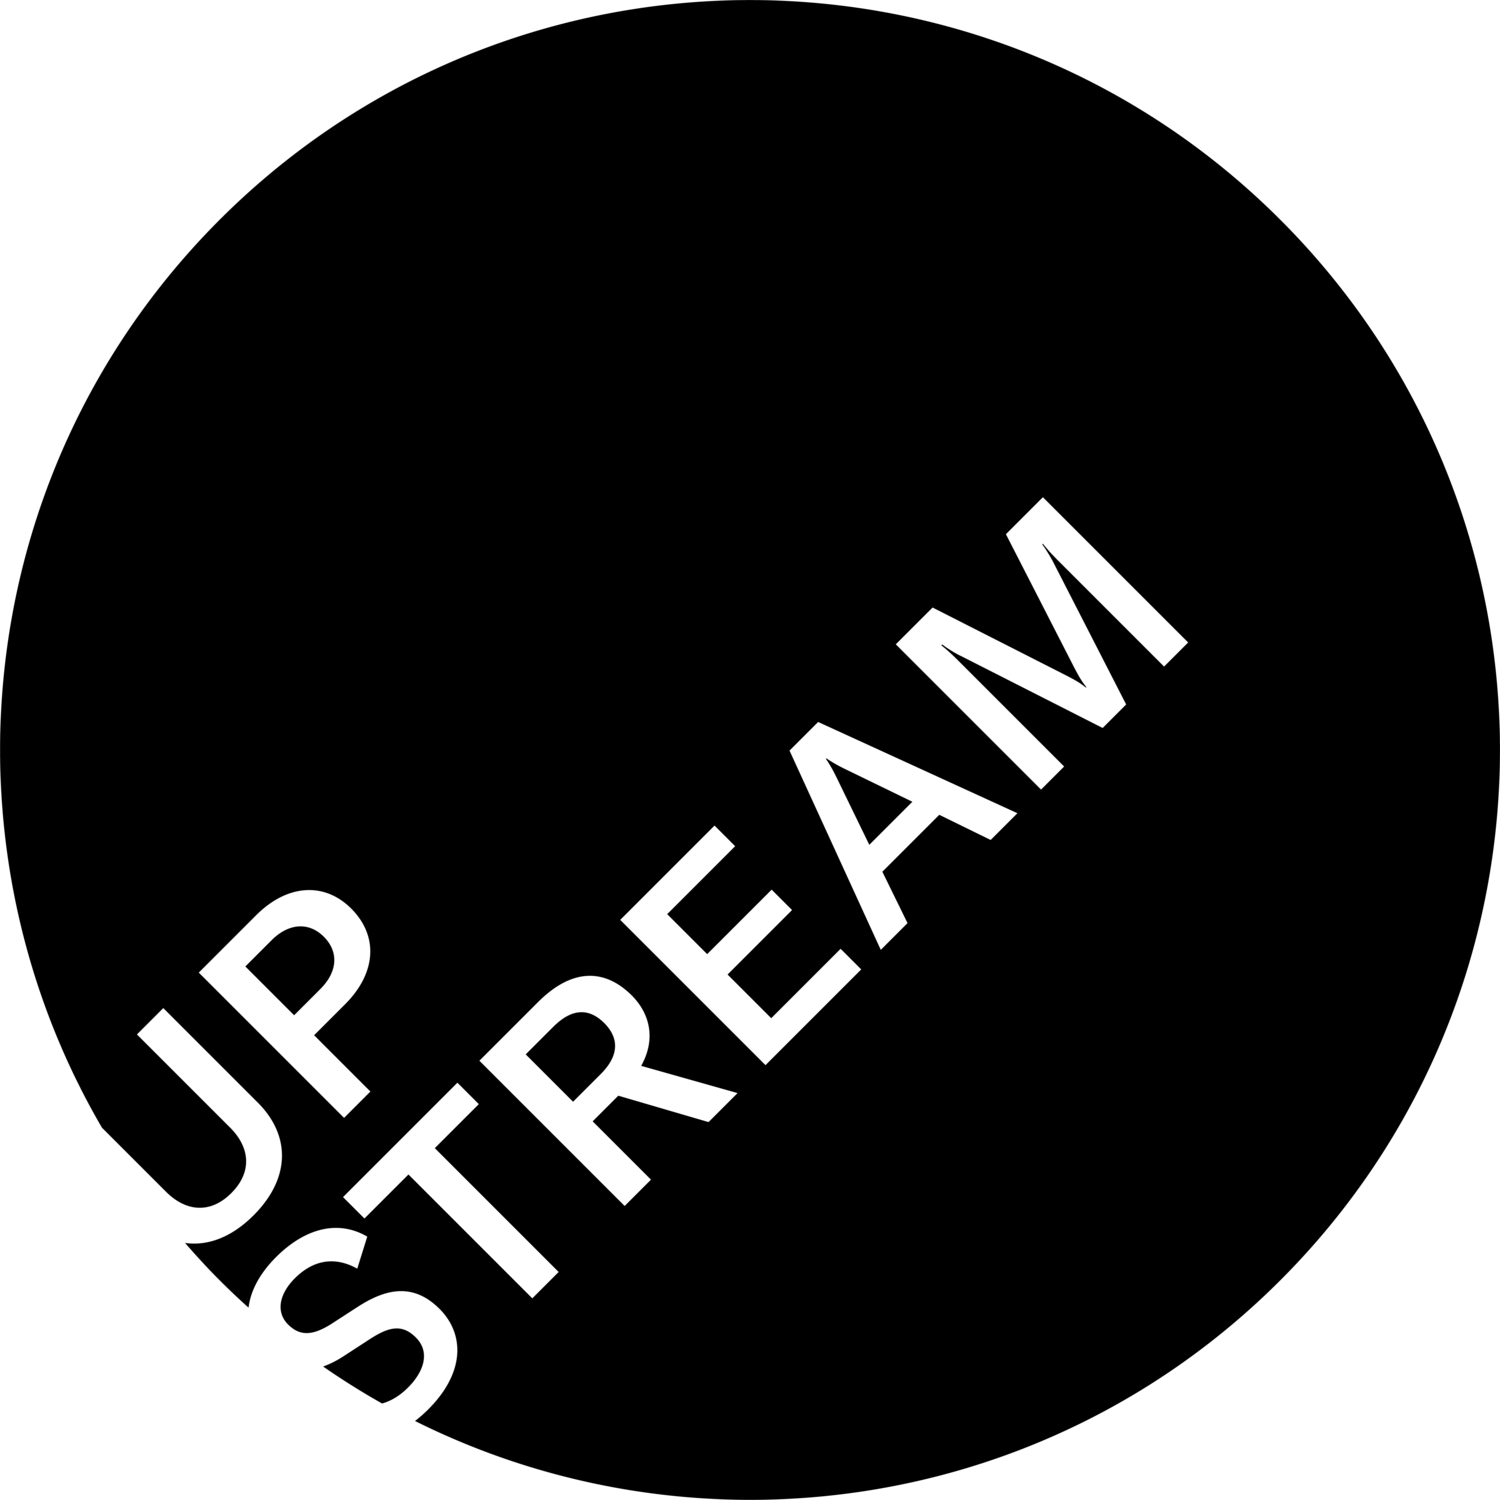 Upstream International